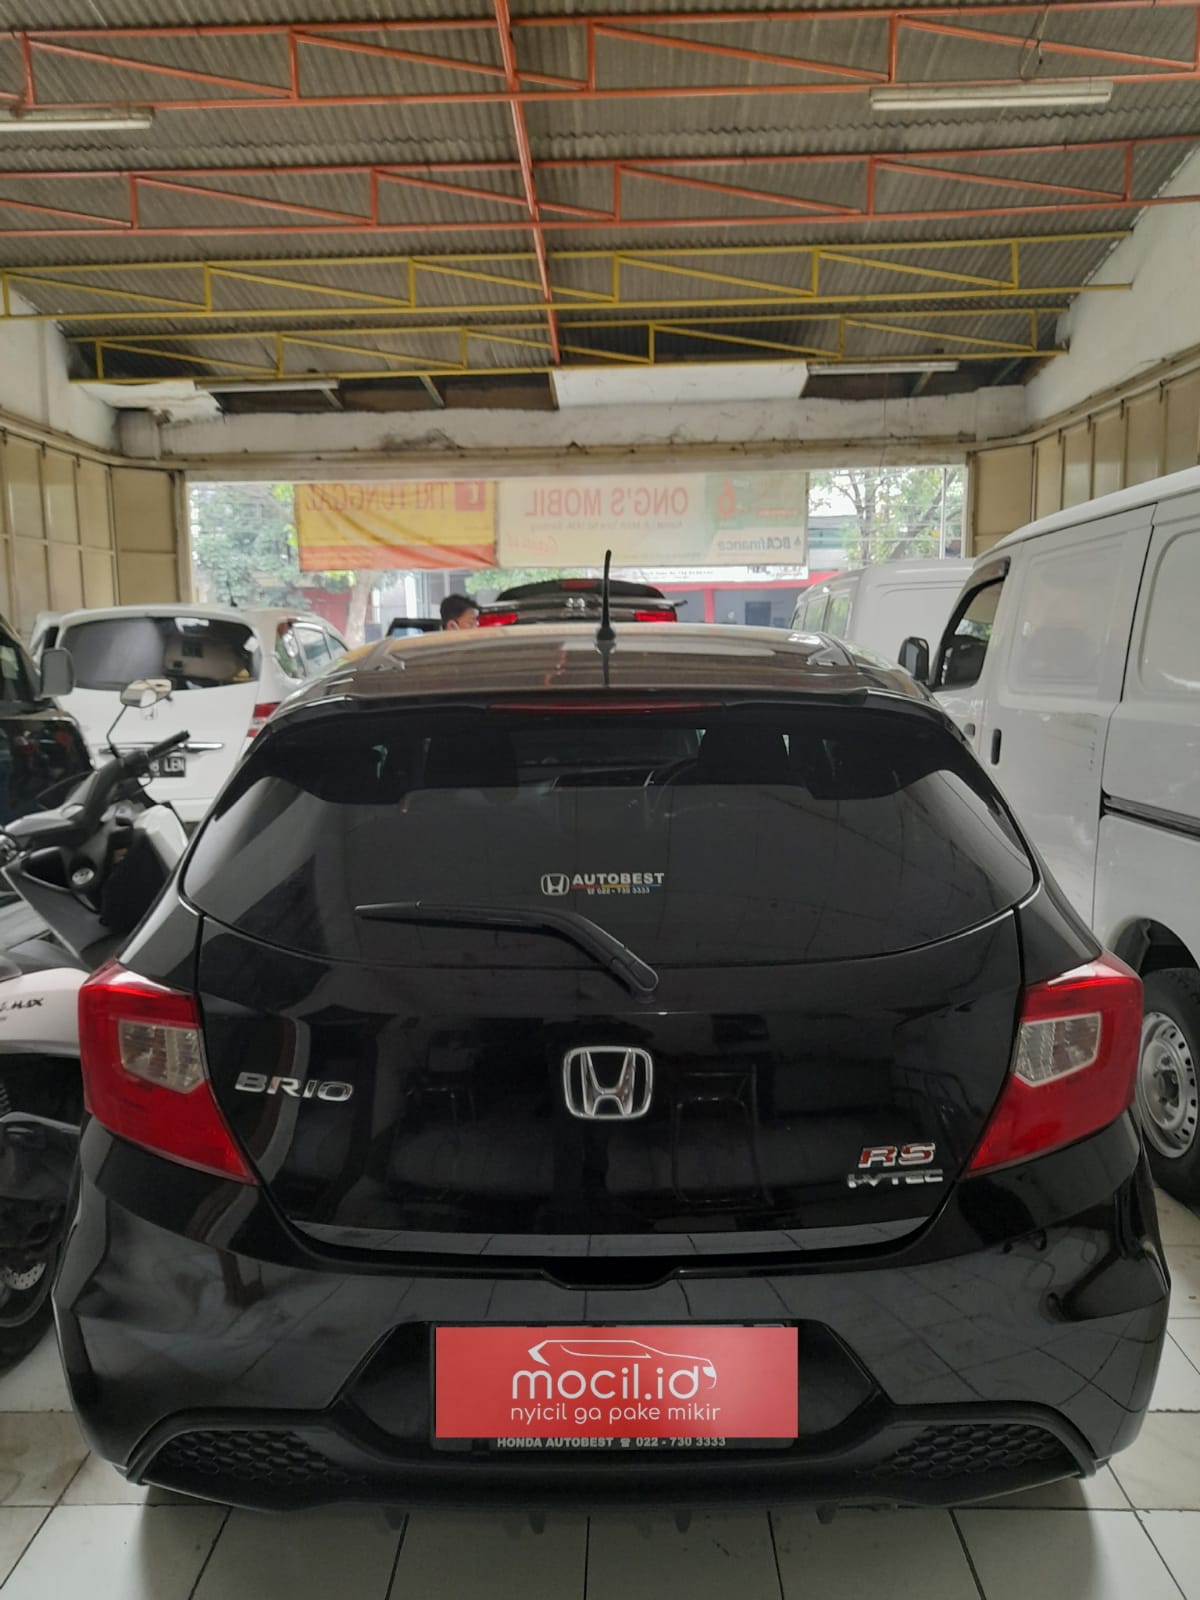 HONDA BRIO 1.2L RS AT 2019